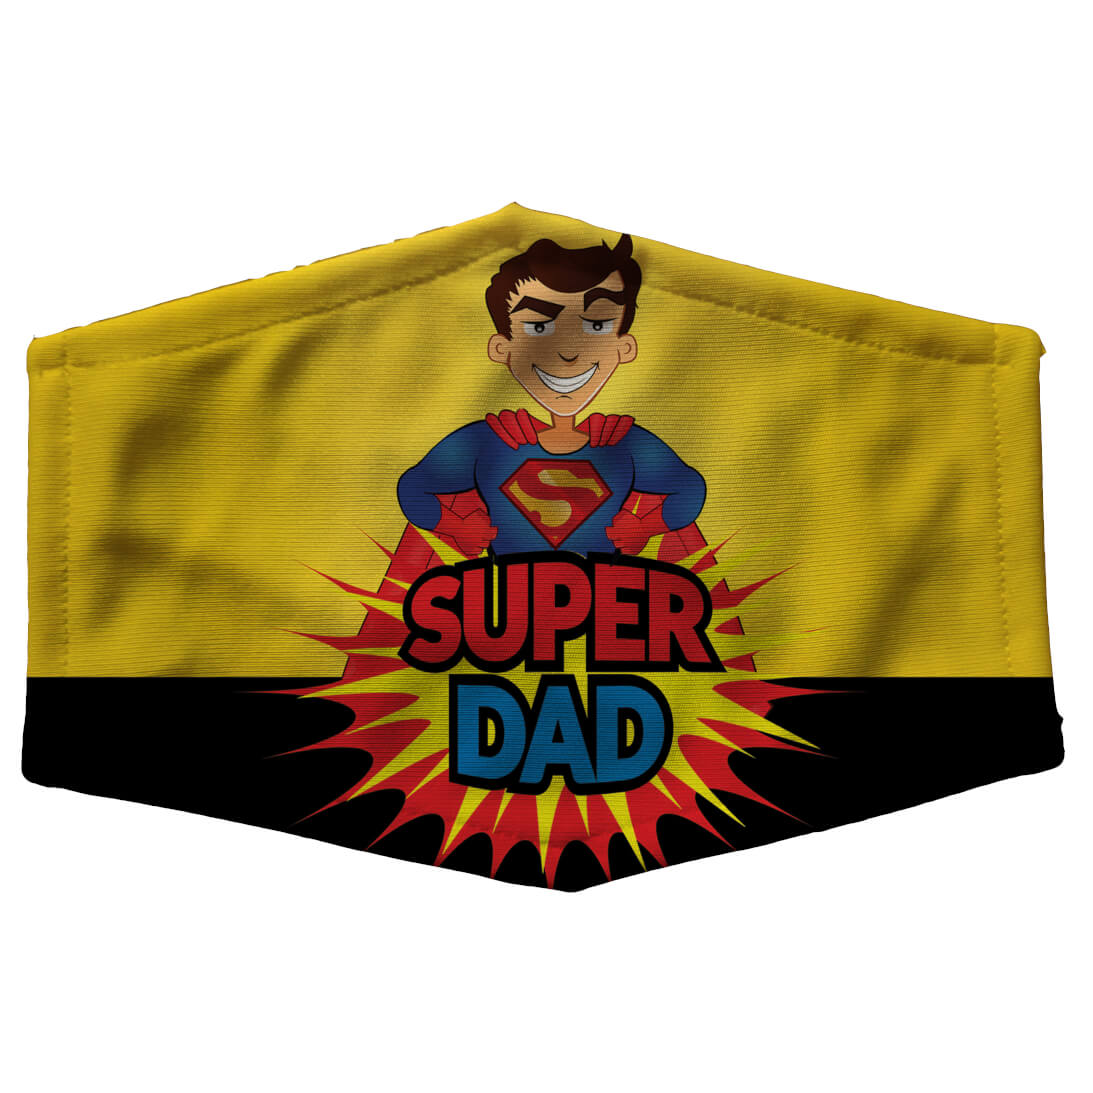 Super Dad Mask